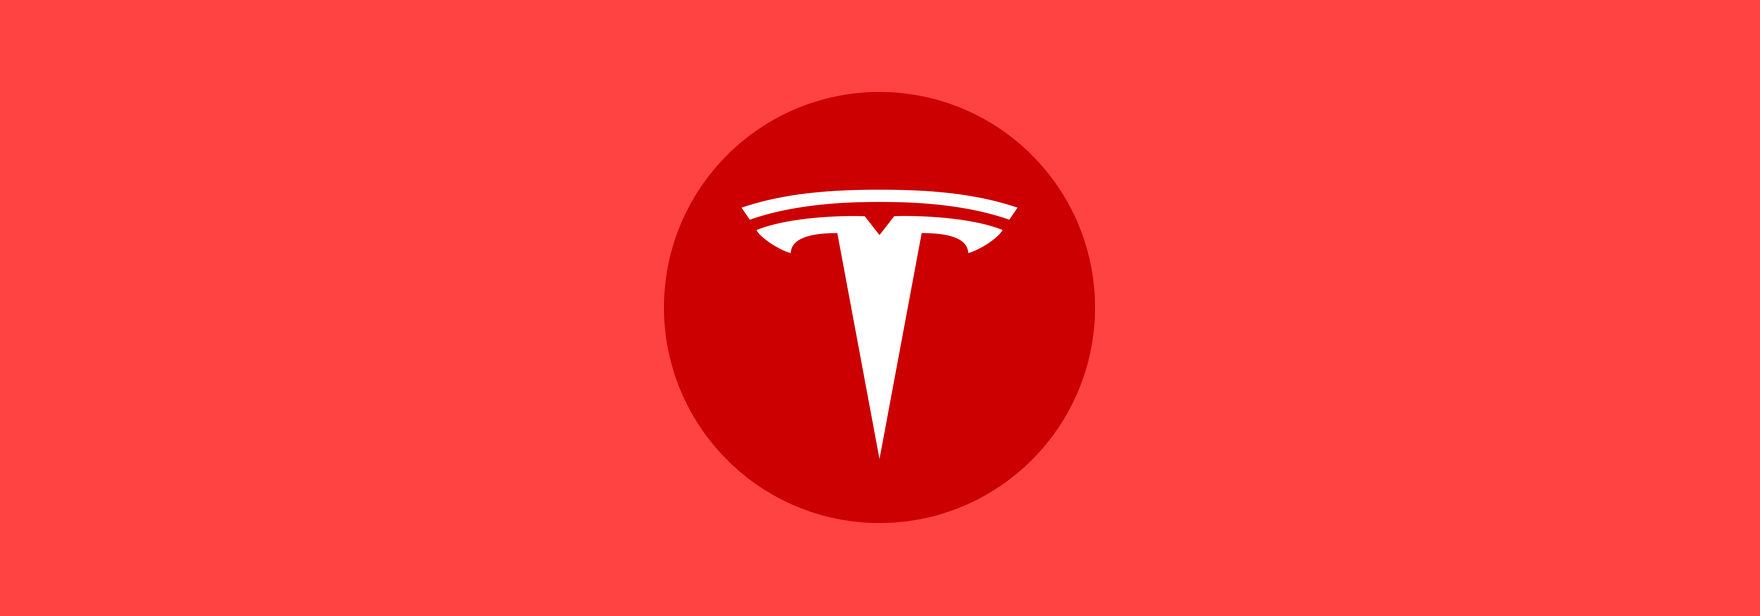 Хейтеры потратили $7 млн на антирекламу Tesla на Супербоуле